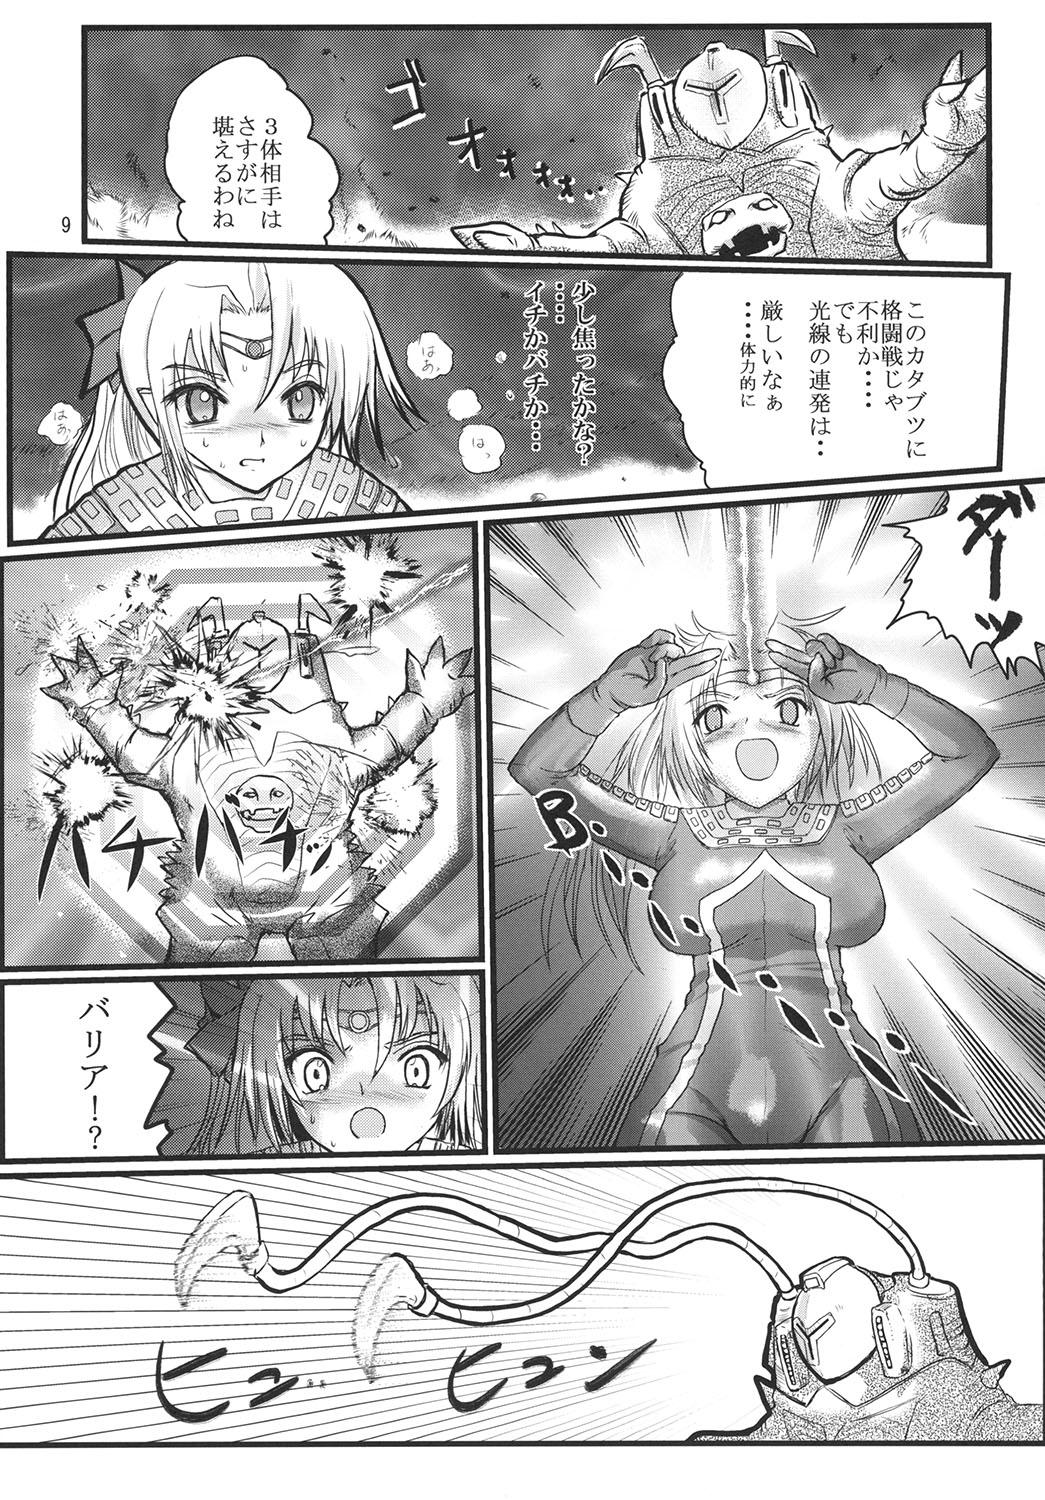 Blowjob Ultra Nanako Zettaizetsumei! - Ultraman Gay - Page 9